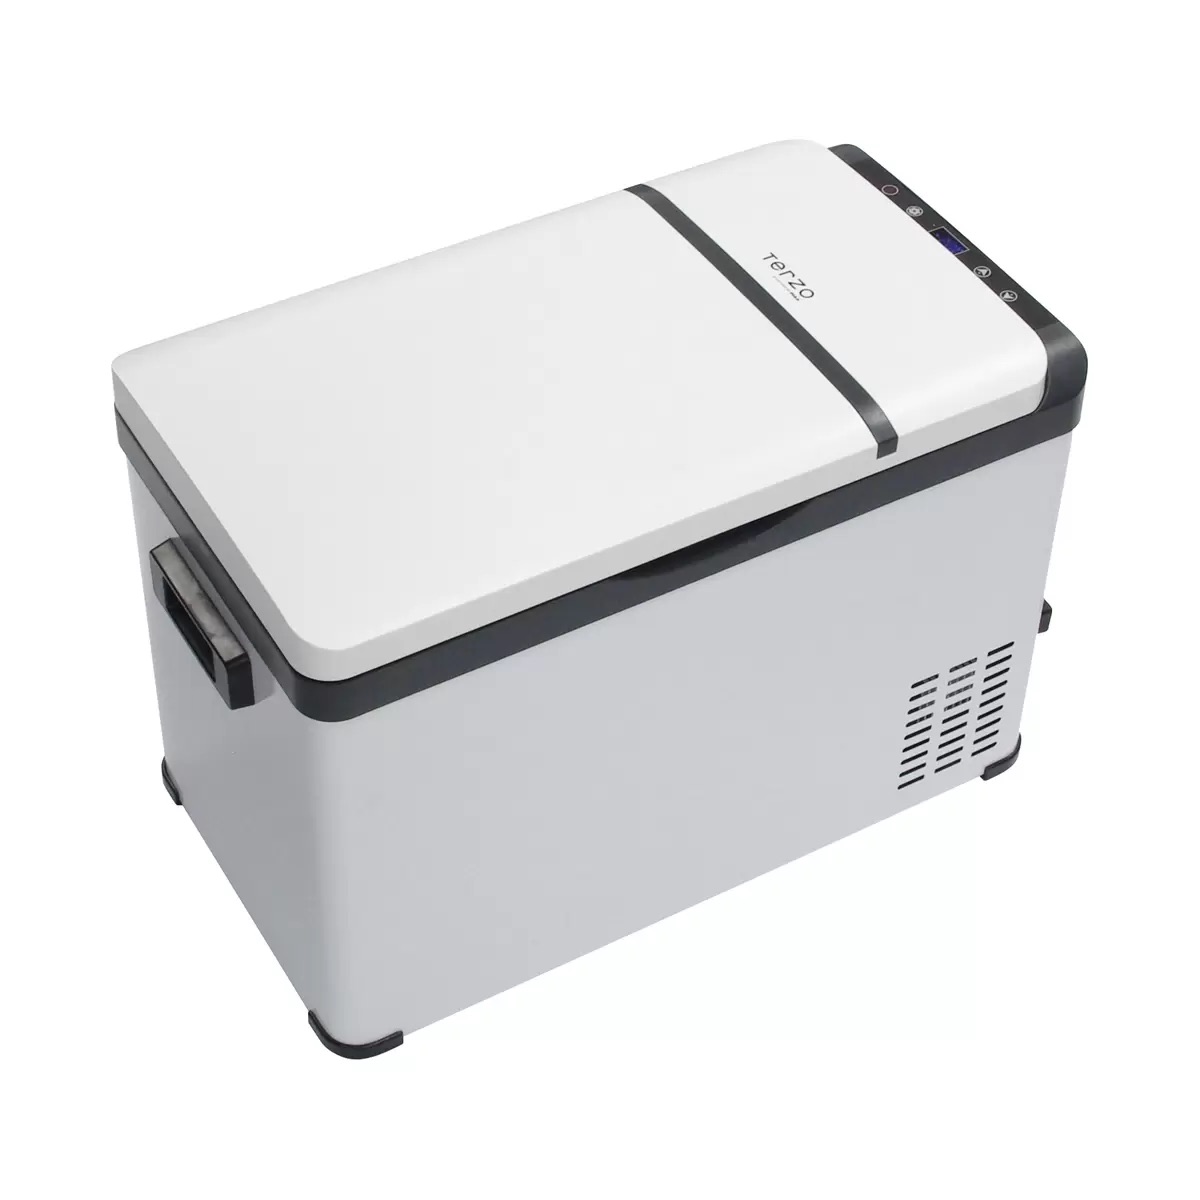 自動車用ポータブル冷蔵&冷凍庫 TERZO エクセルクール 30L Portable refrigerator / freezer for car TERZO EXCELCOOL 30L